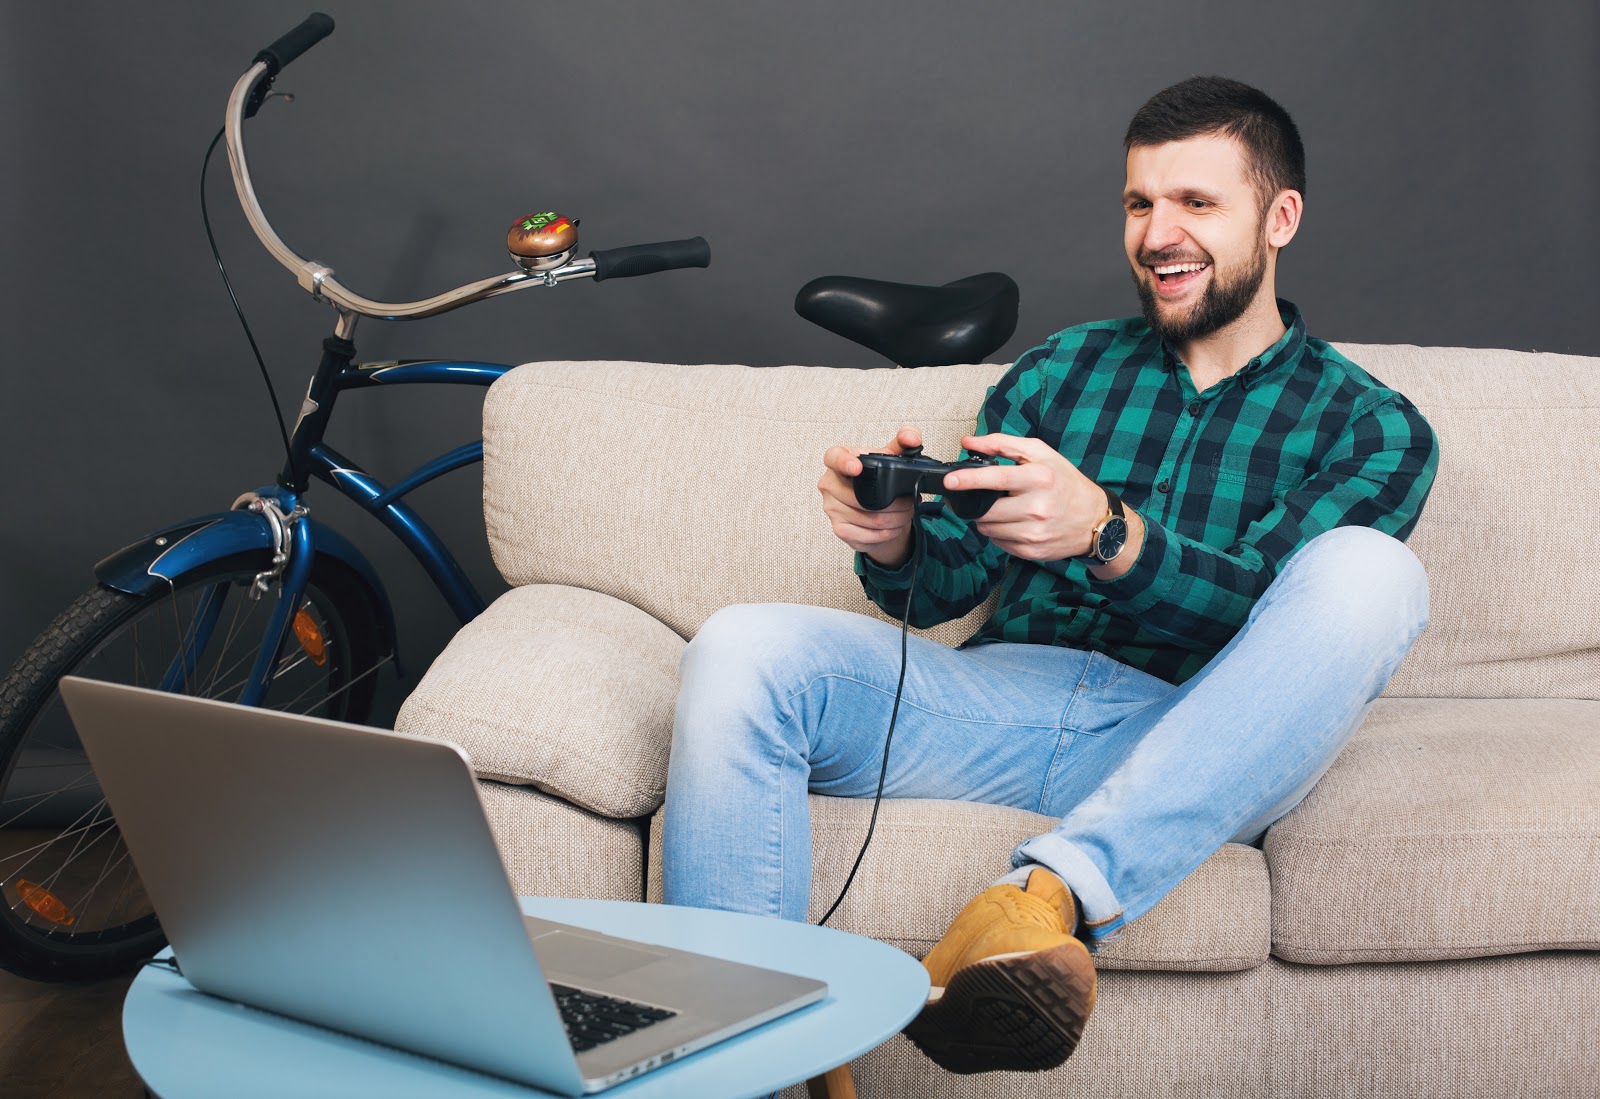 Foto de um homem jovem, com um console de videogame nas mãos, sentado em um sofá, de frente para um notebook e com uma bicicleta ao fundo, atrás do sofá. O objetivo da imagem é saber o que é SSD no notebook e sua importância para o bom desempenho gamer.